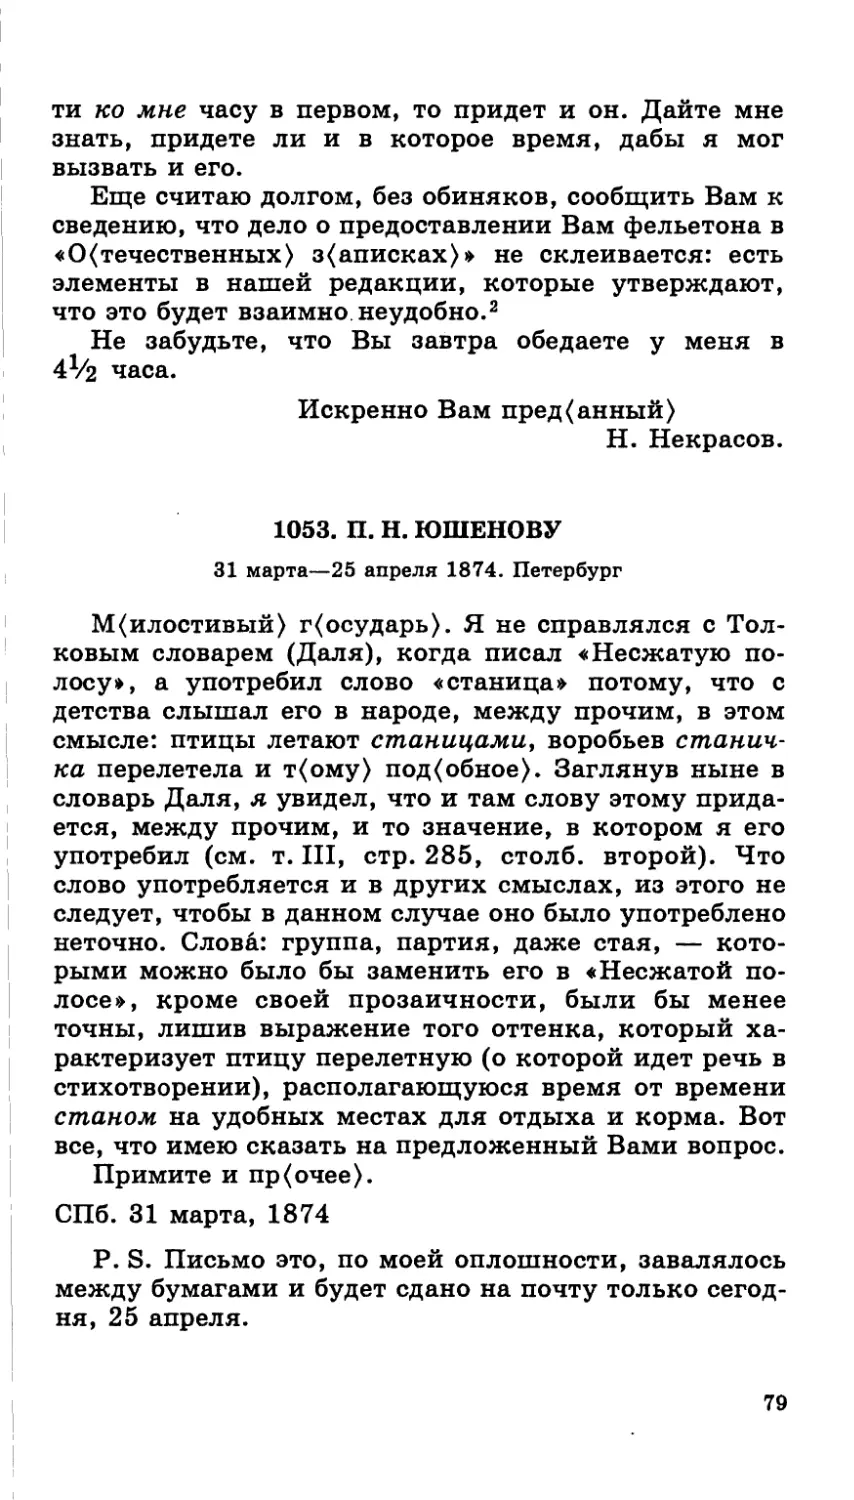 1053.П. Н. Юшенову. 31 марта—25 апреля